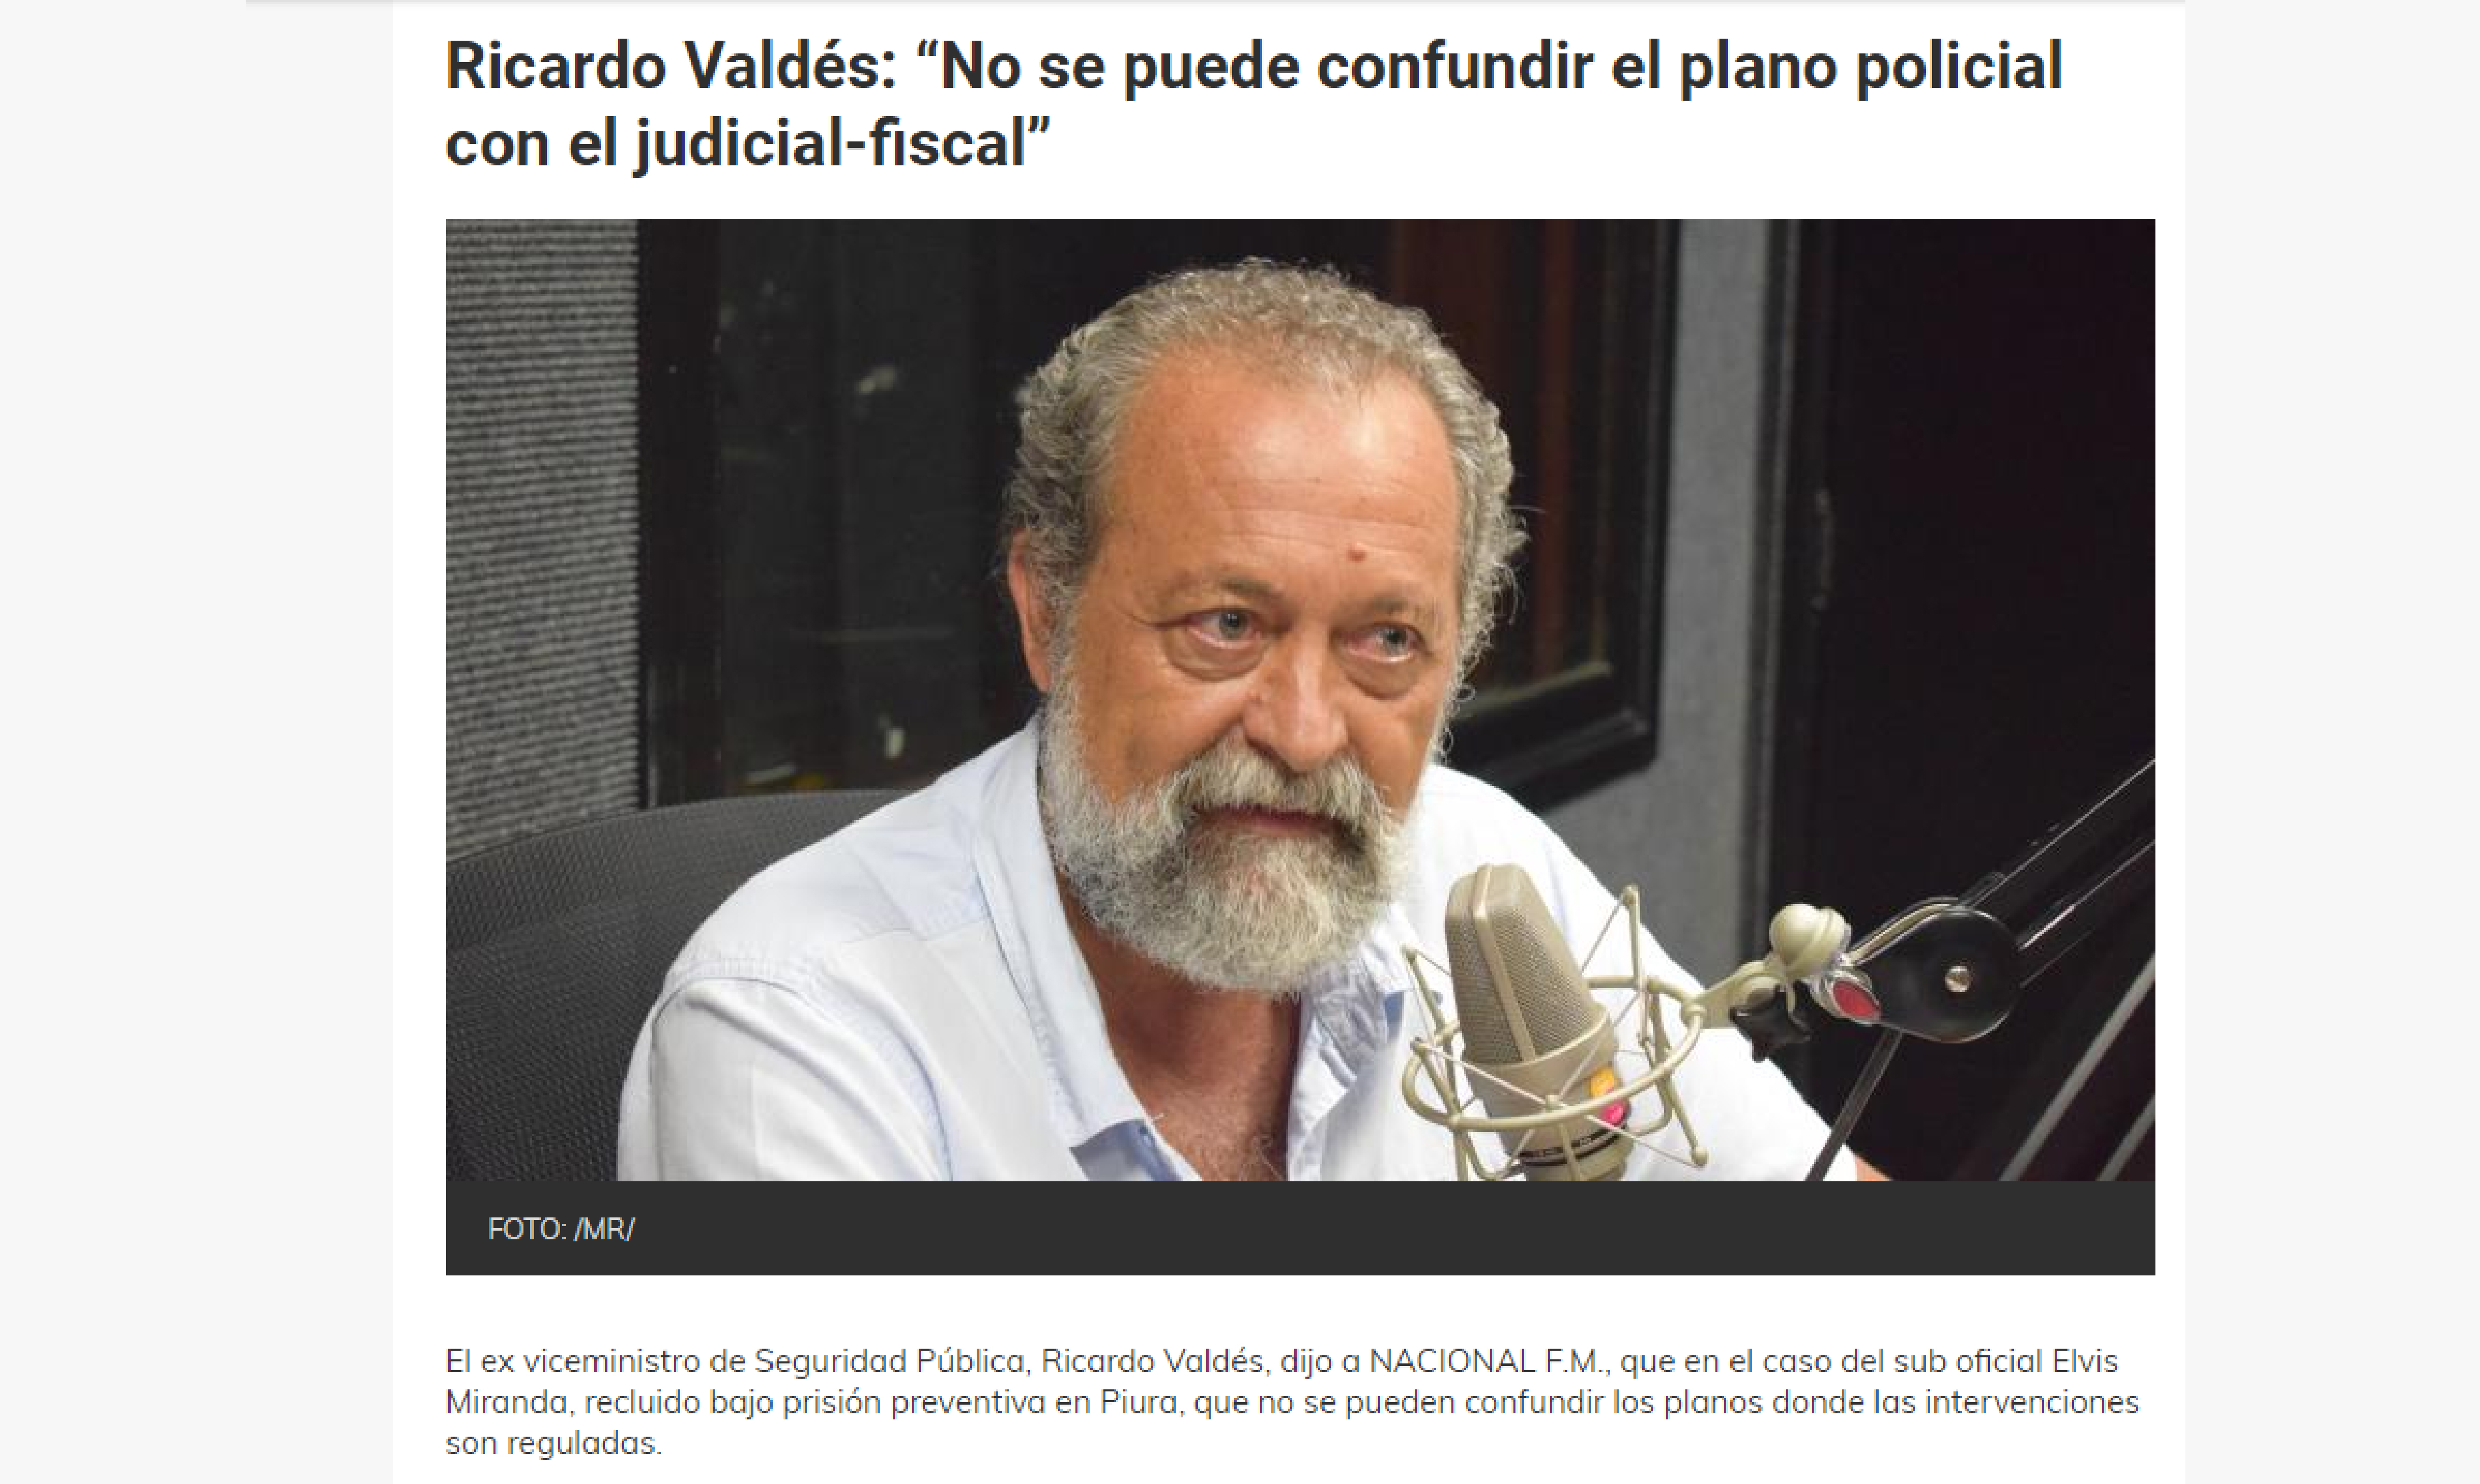 Ricardo Valdés: “No se puede confundir el plano policial con el judicial-fiscal”